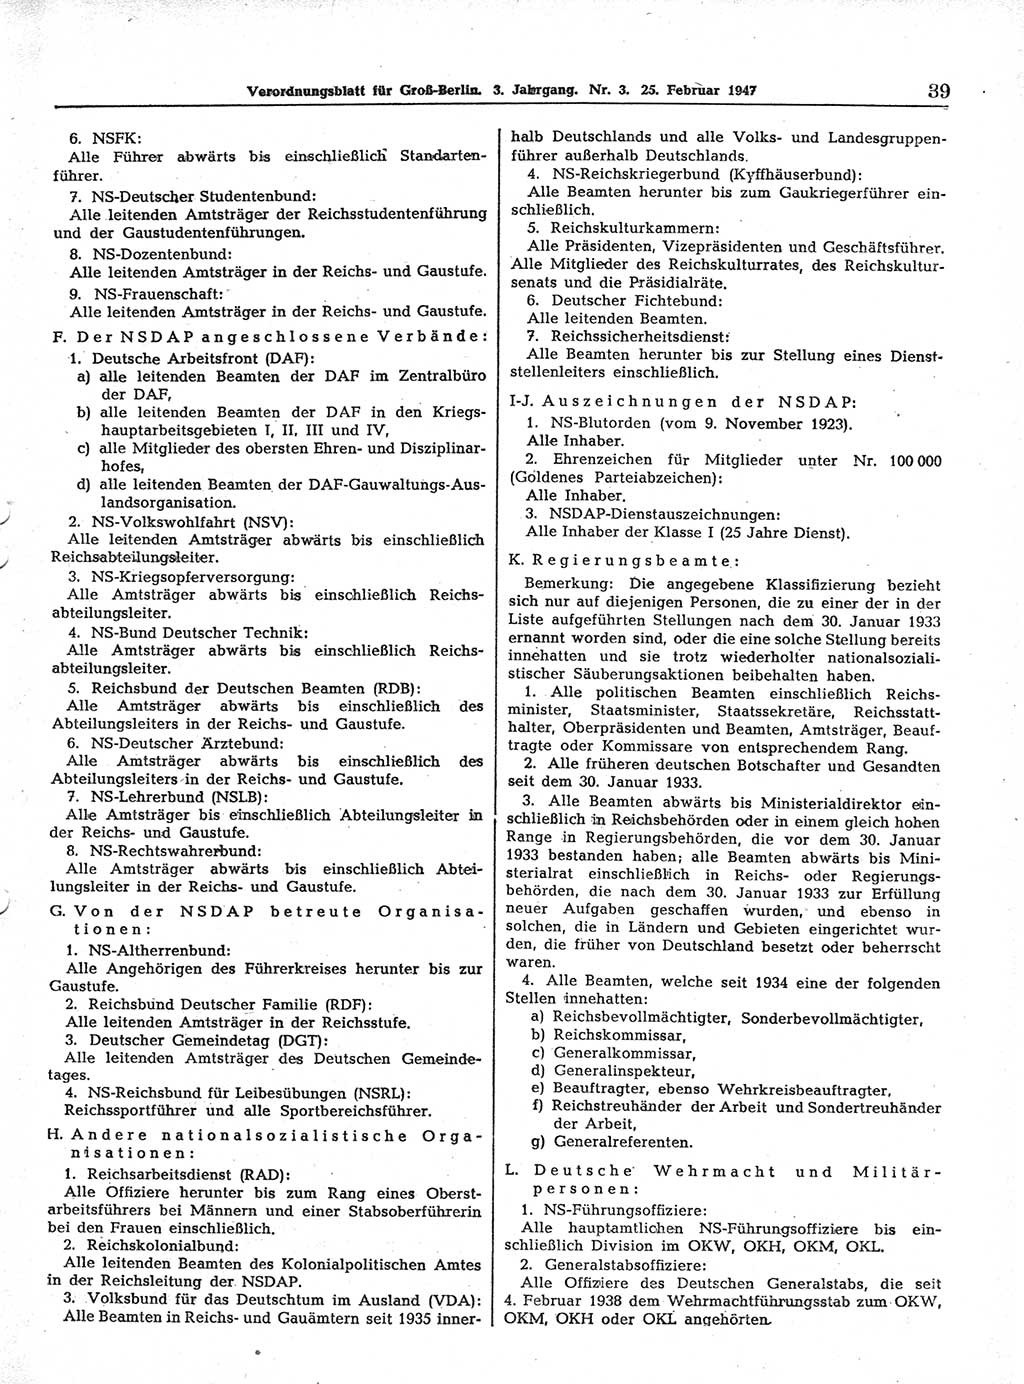 Verordnungsblatt (VOBl.) für Groß-Berlin 1947, Seite 39 (VOBl. Bln. 1947, S. 39)